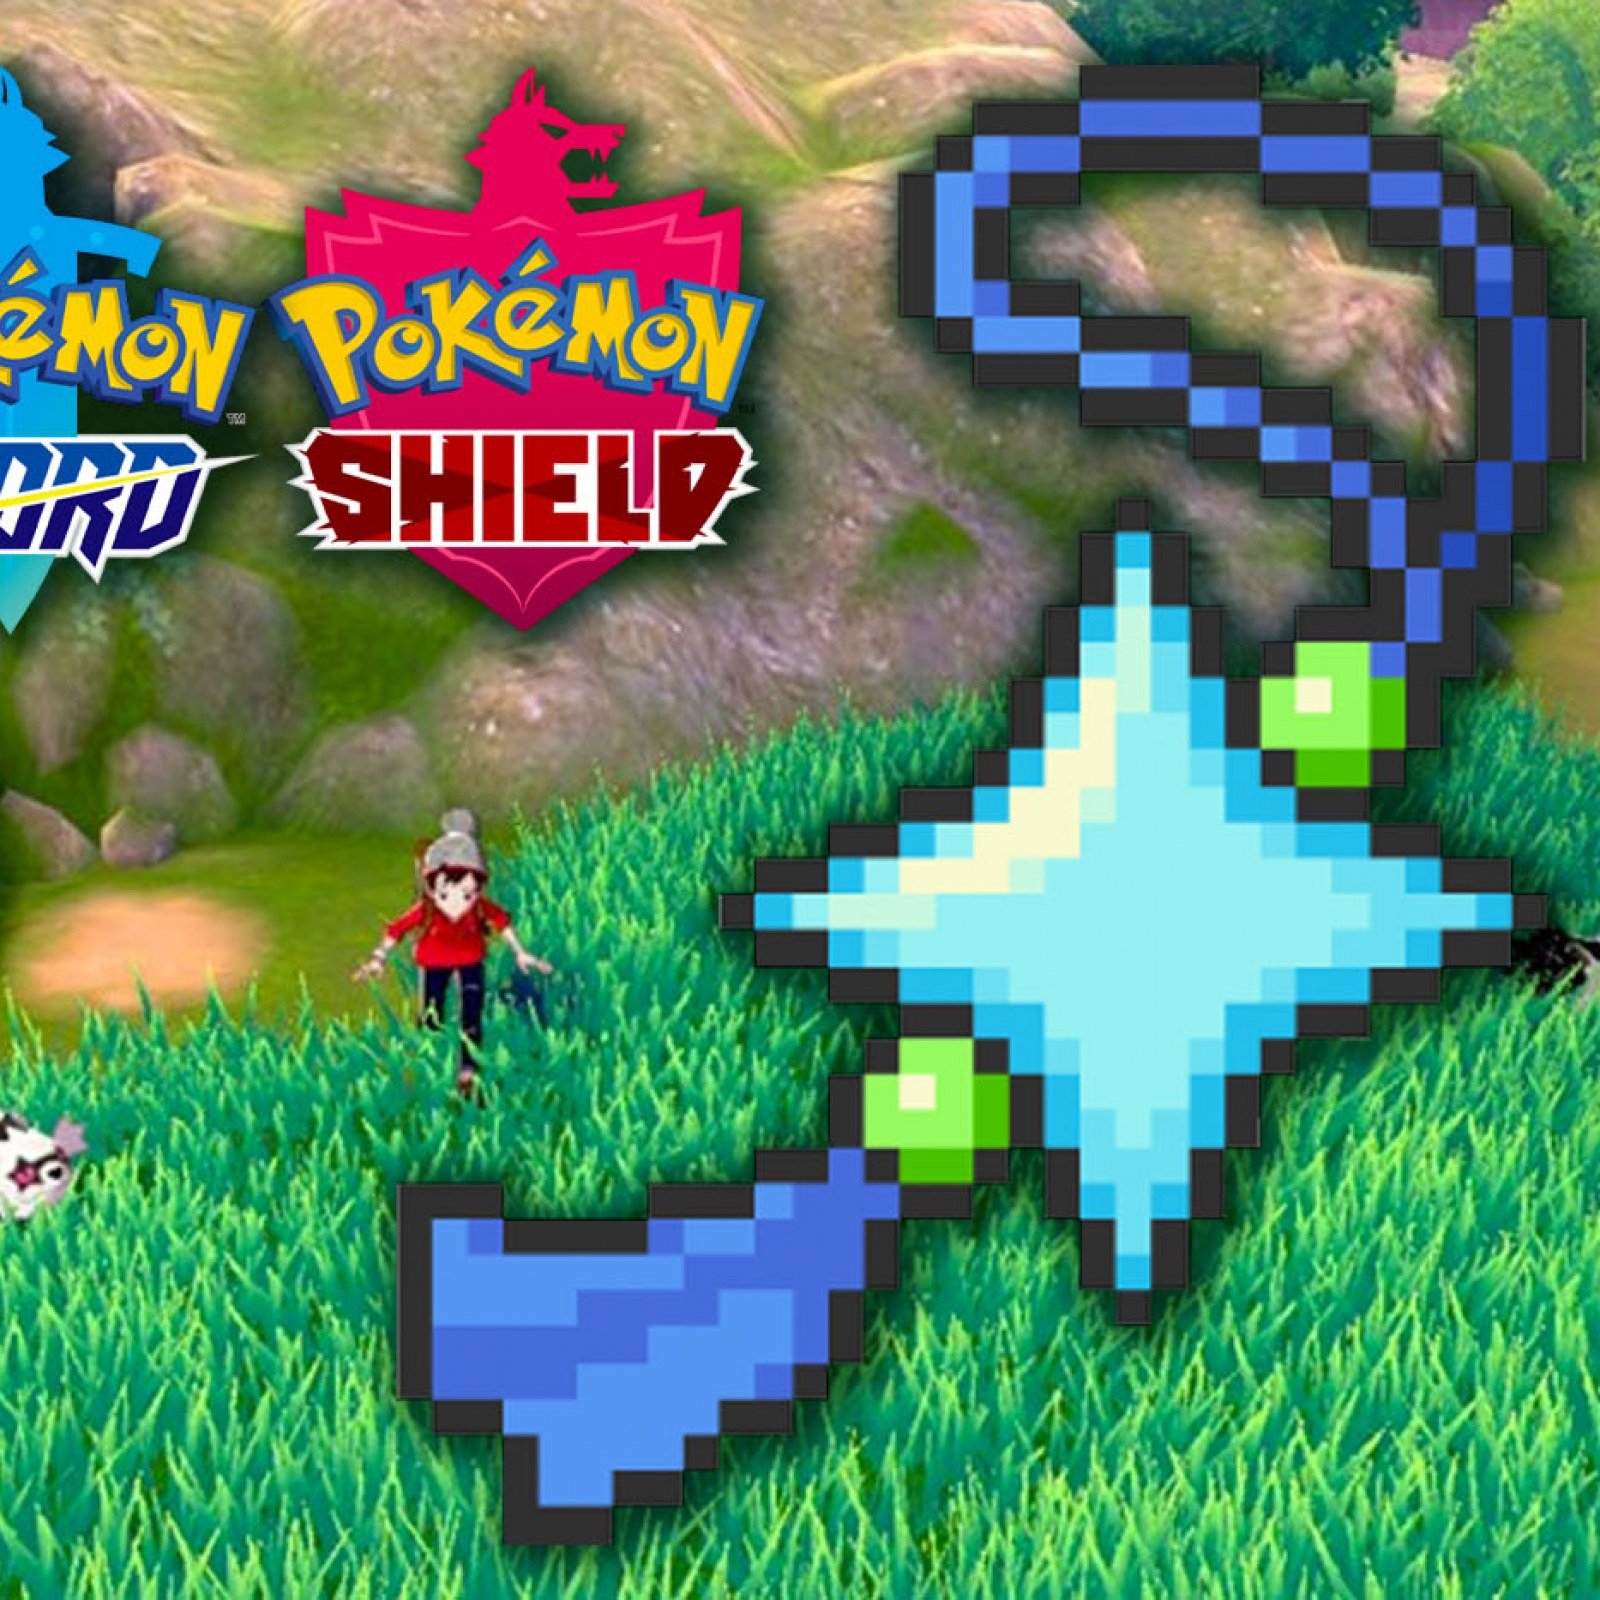 Games - Shiny Pokémon